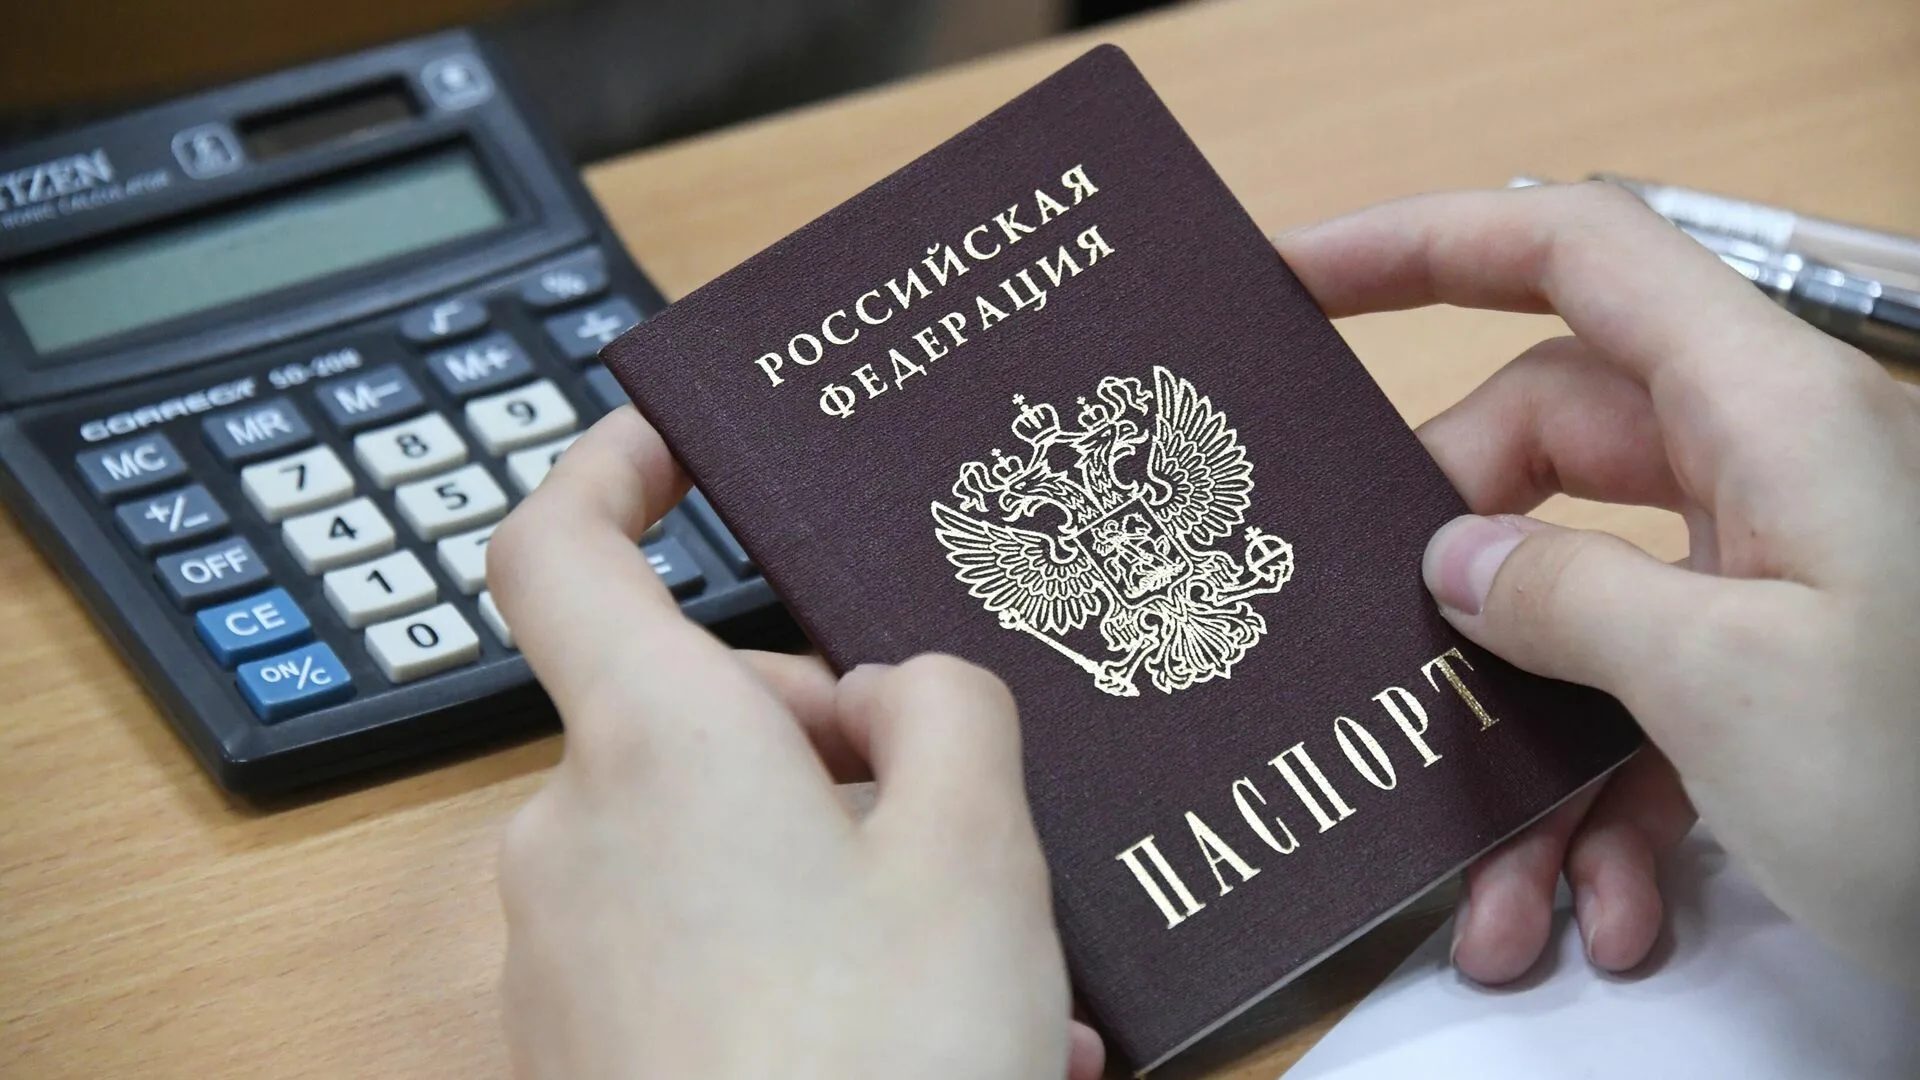 Юрист объяснила, можно ли менять паспорт при резком изменении внешности